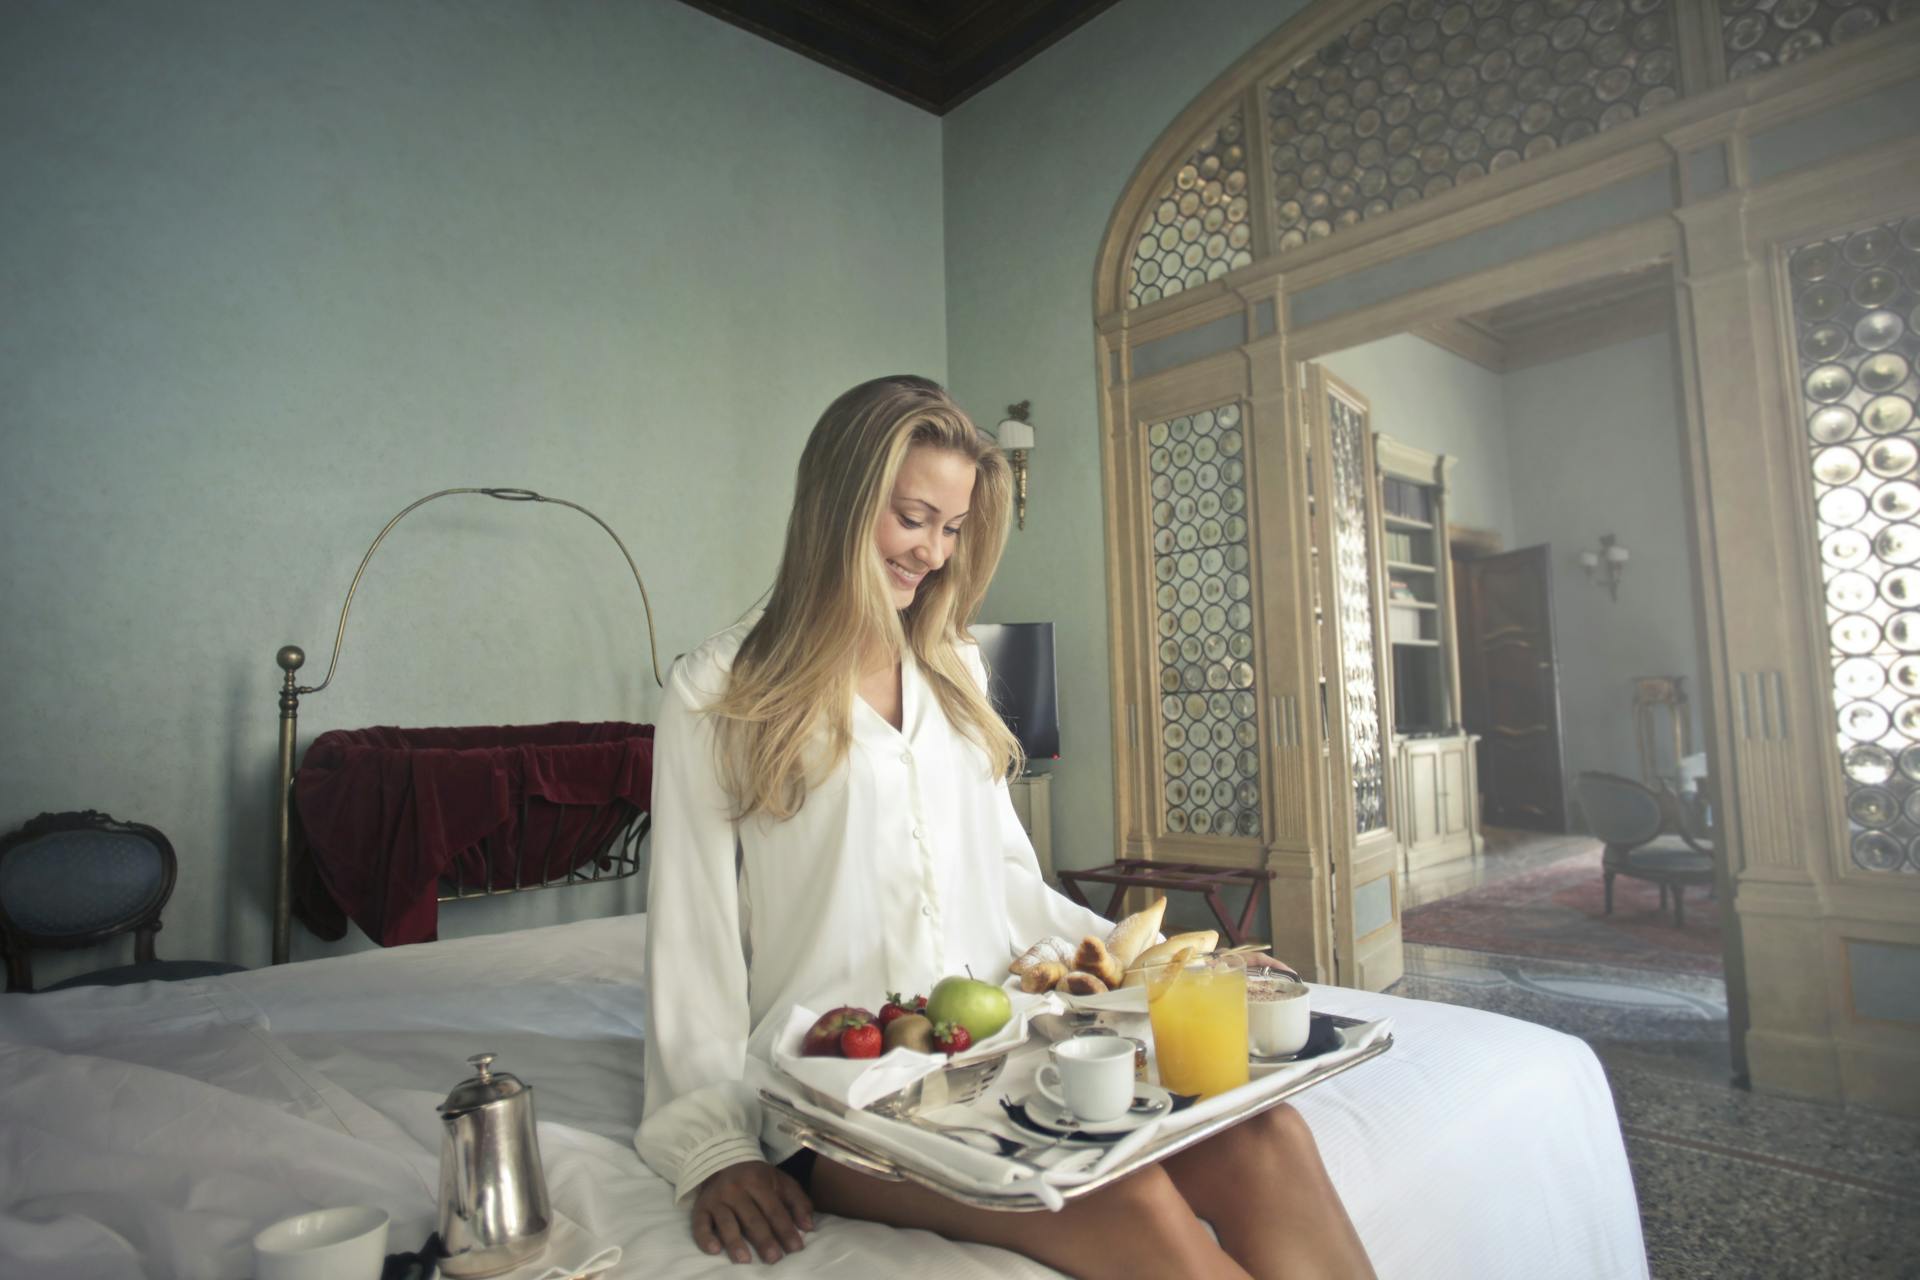 Une femme joyeuse avec un petit déjeuner sur un plateau dans une chambre d'hôtel | Source : Pexels